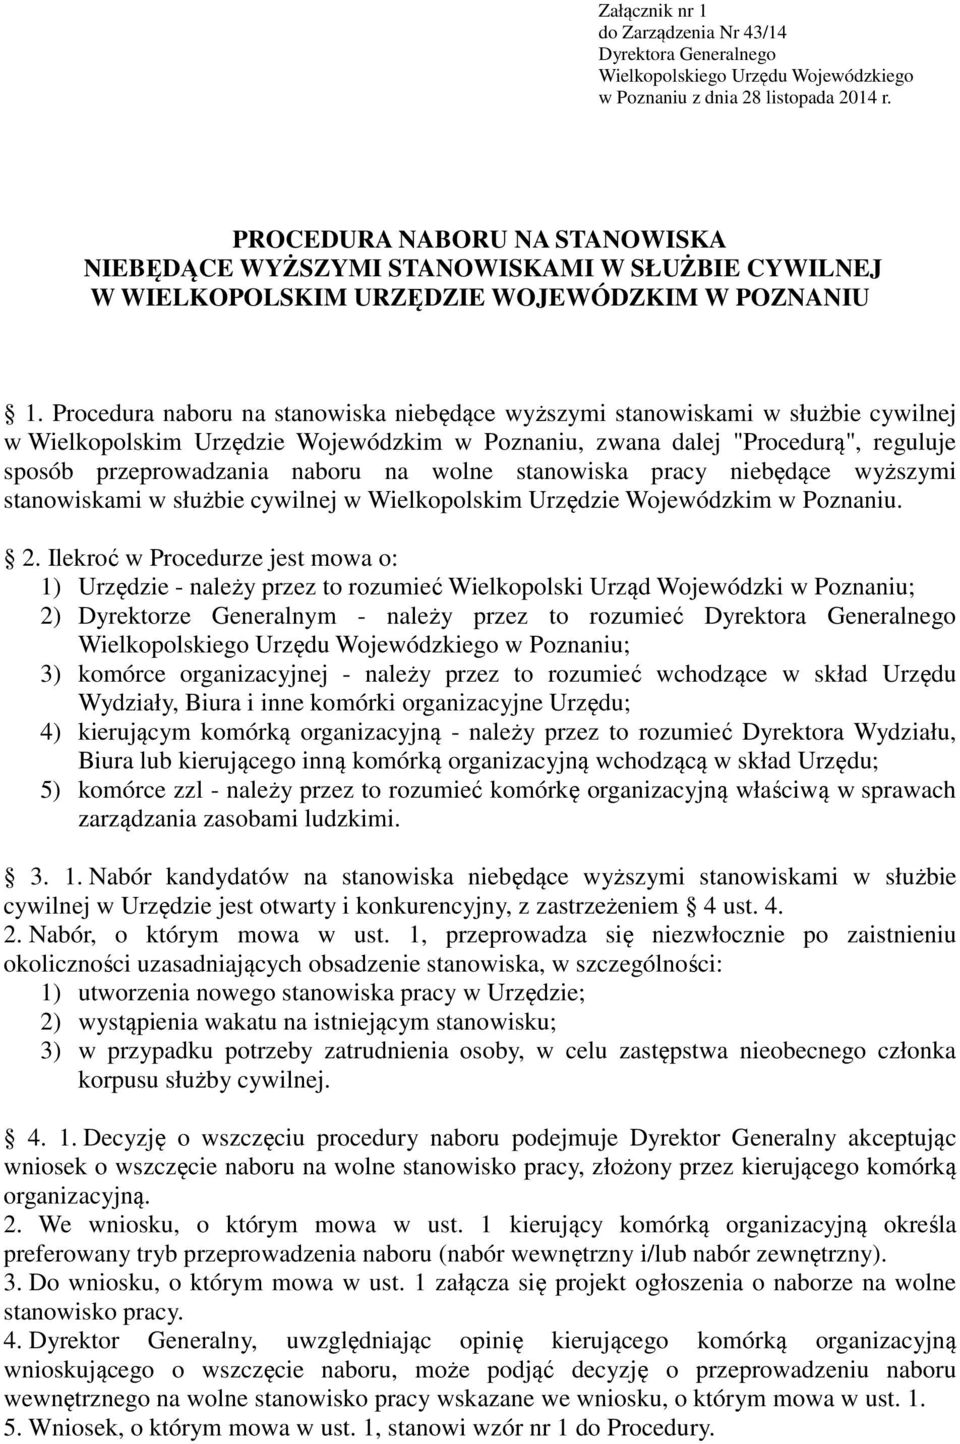 Procedura naboru na stanowiska niebędące wyższymi stanowiskami w służbie cywilnej w Wielkopolskim Urzędzie Wojewódzkim w Poznaniu, zwana dalej "Procedurą", reguluje sposób przeprowadzania naboru na